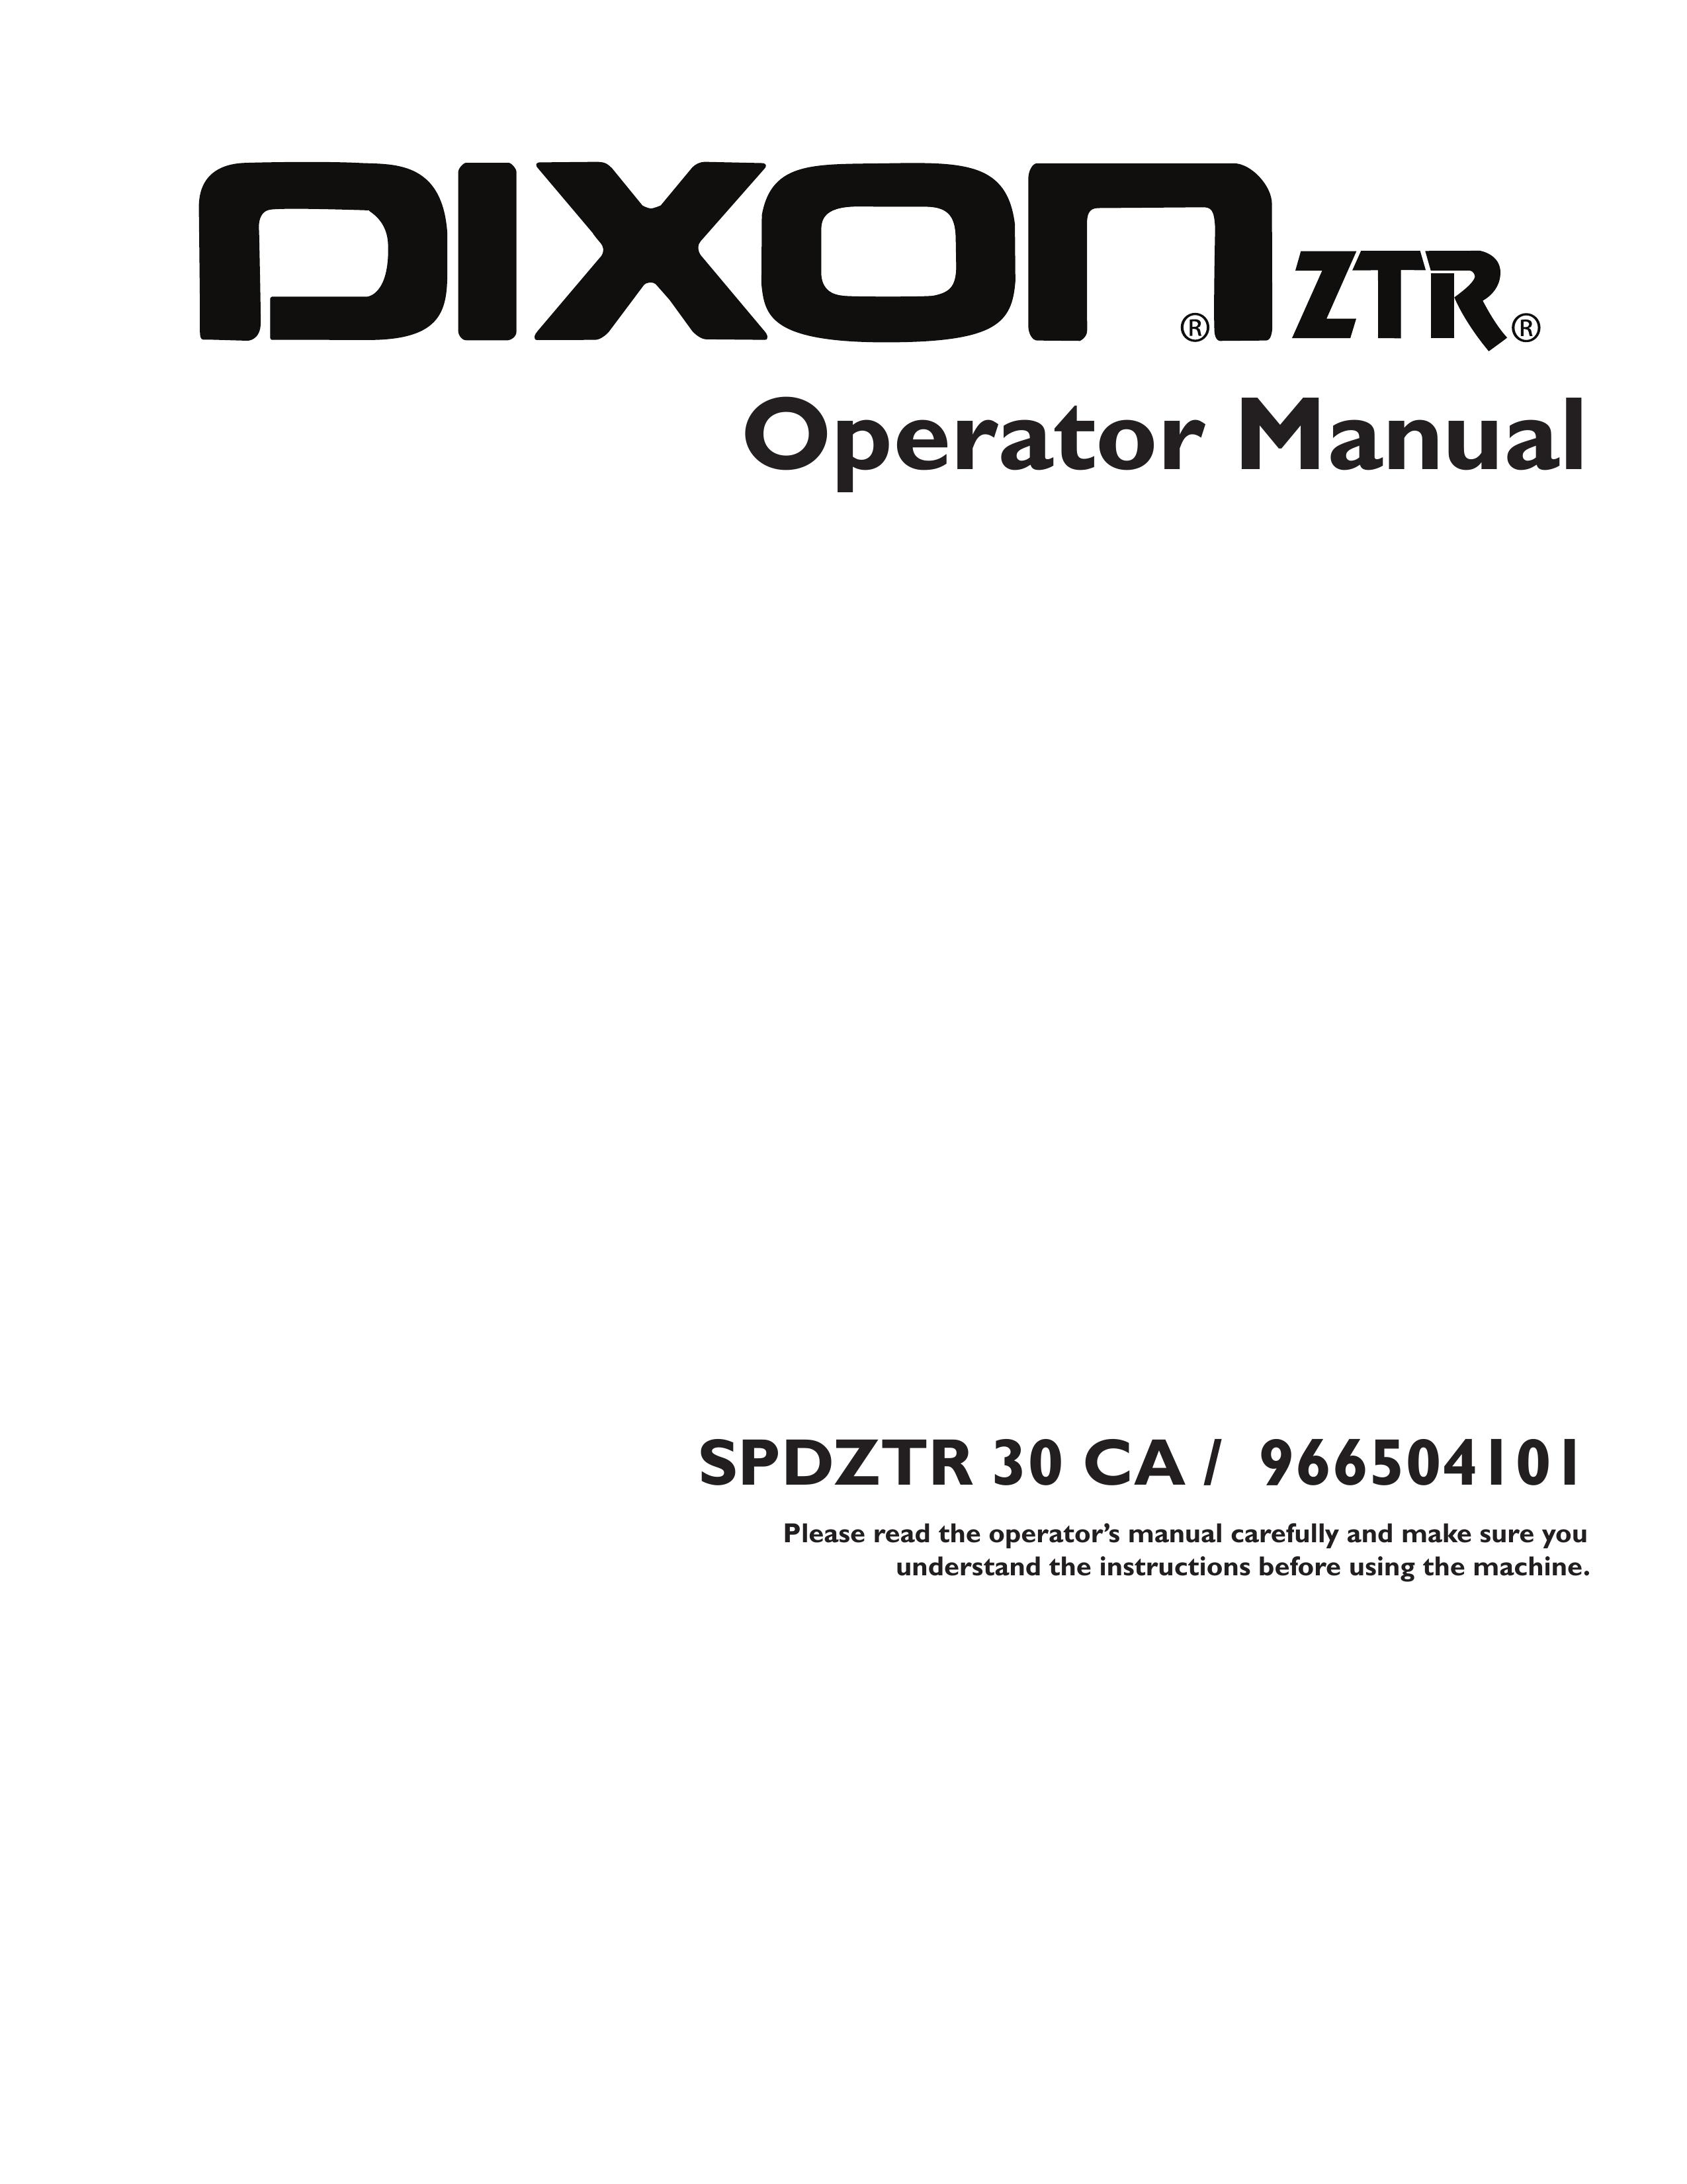 Dixon 115312327R1 Lawn Mower User Manual